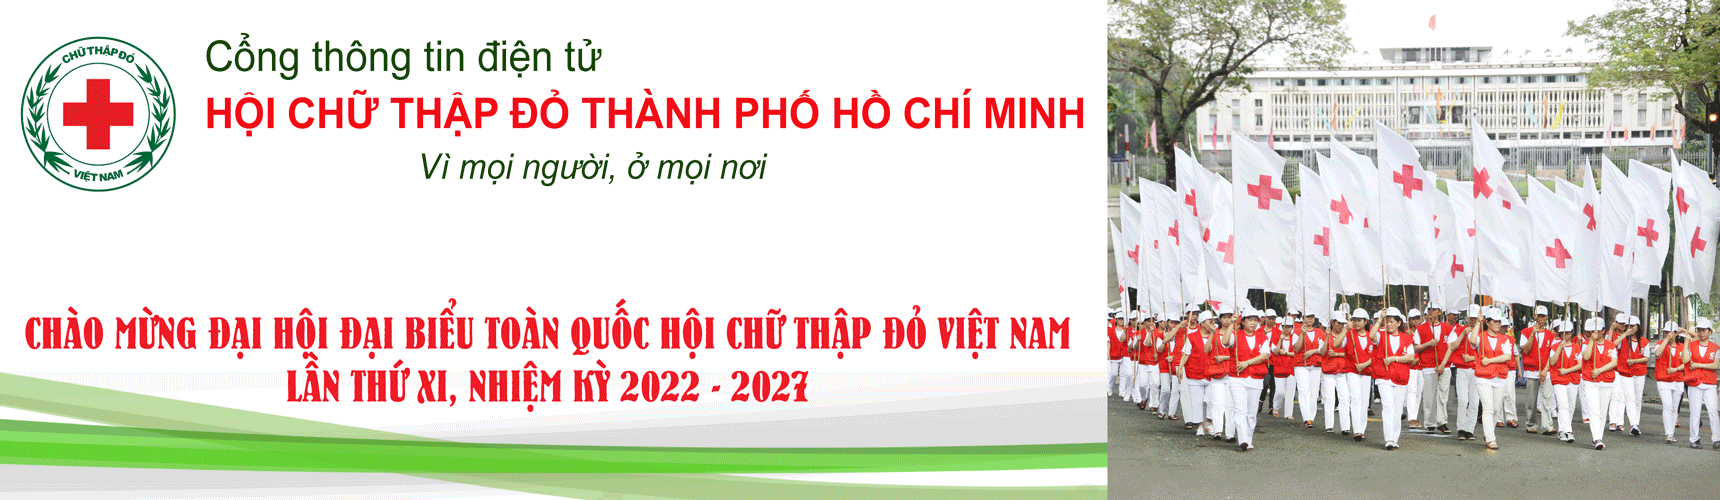 Hội Chữ thập đỏ Thành phố Hồ Chí Minh | 4 Lưu ý giúp bạn đảm bảo sức khỏe ngày Tết